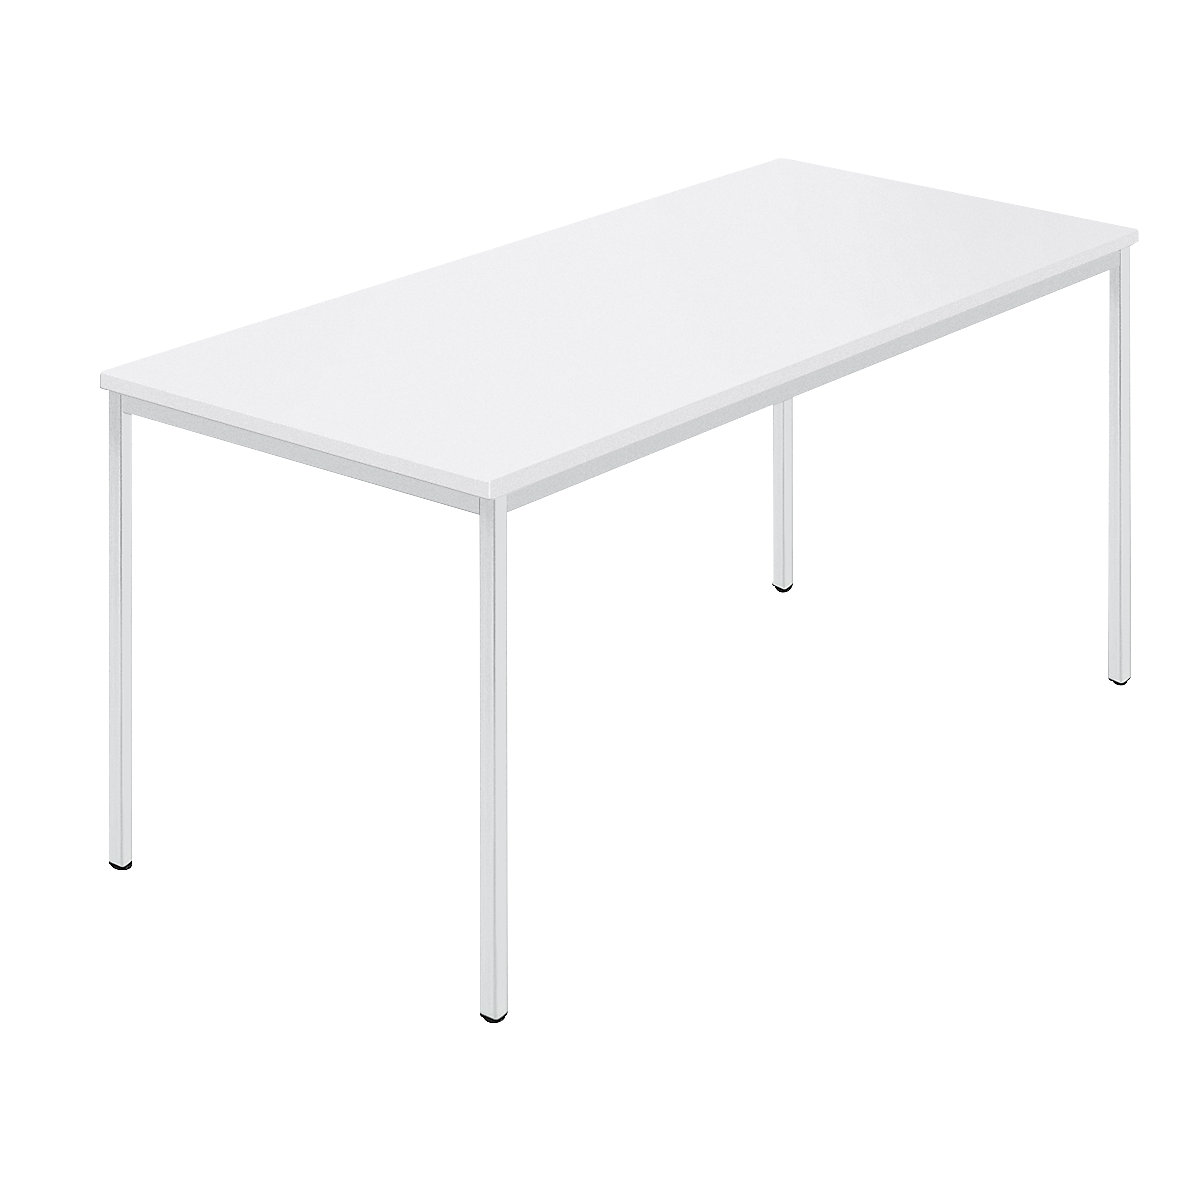 Rechthoekige tafel, vierkante buis met coating, b x d = 1500 x 800 mm, wit / grijs-5